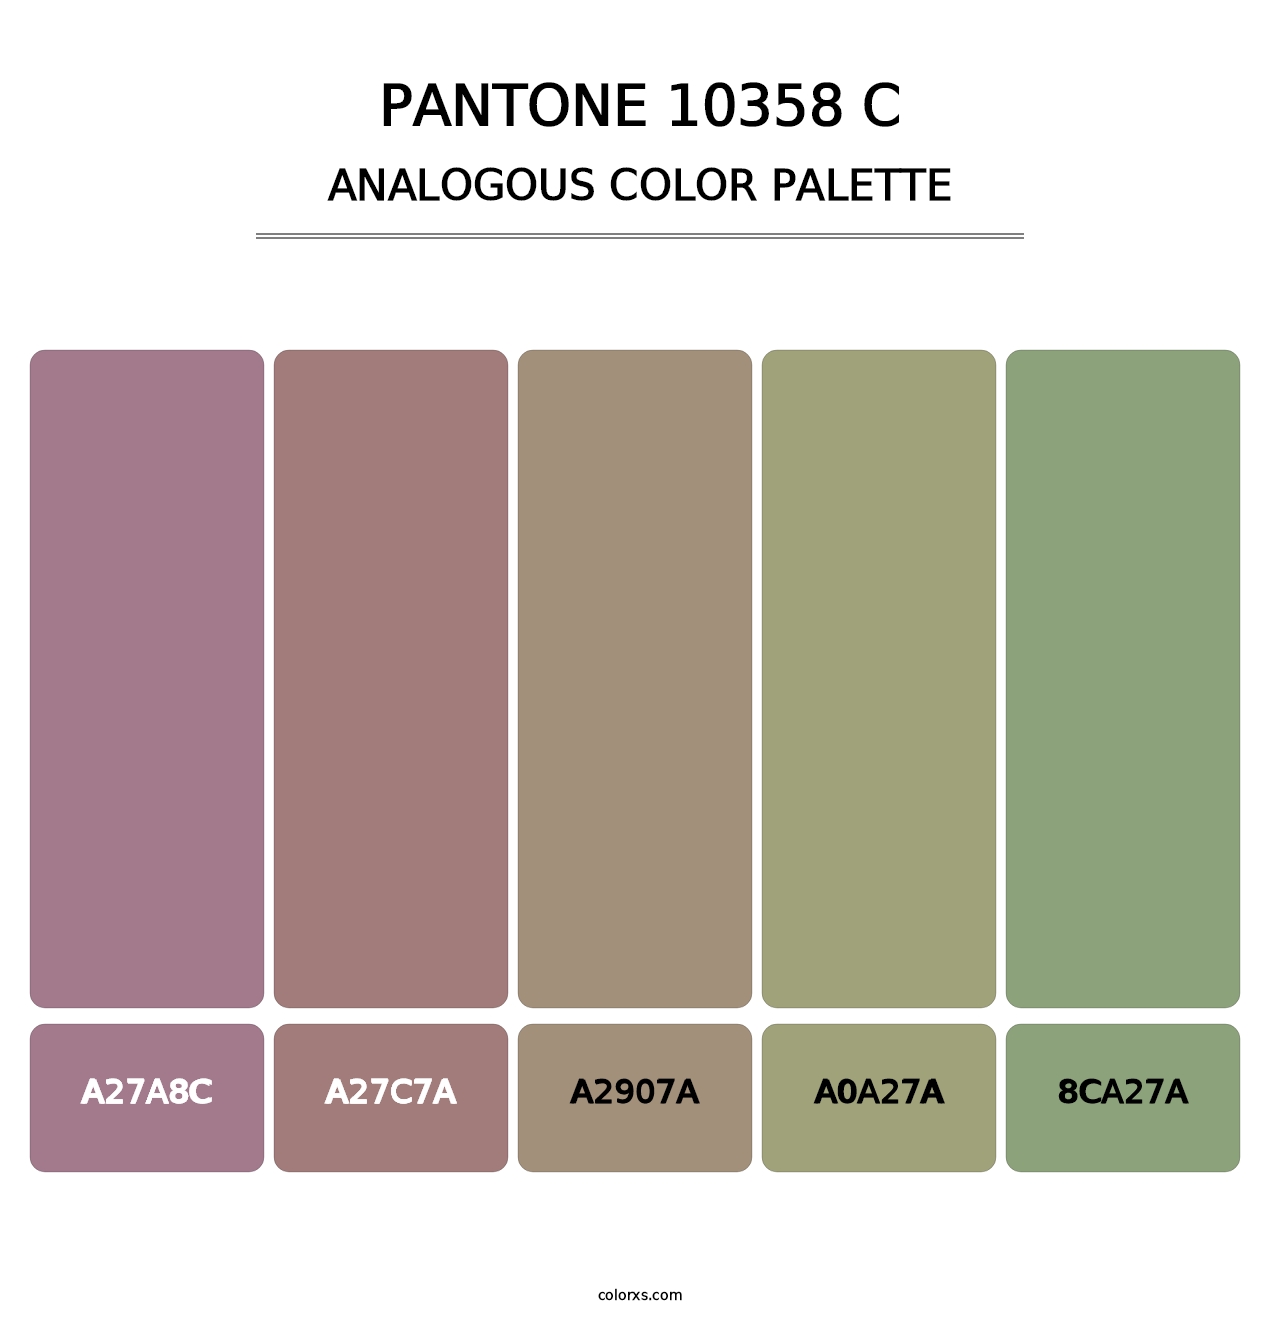 PANTONE 10358 C - Analogous Color Palette